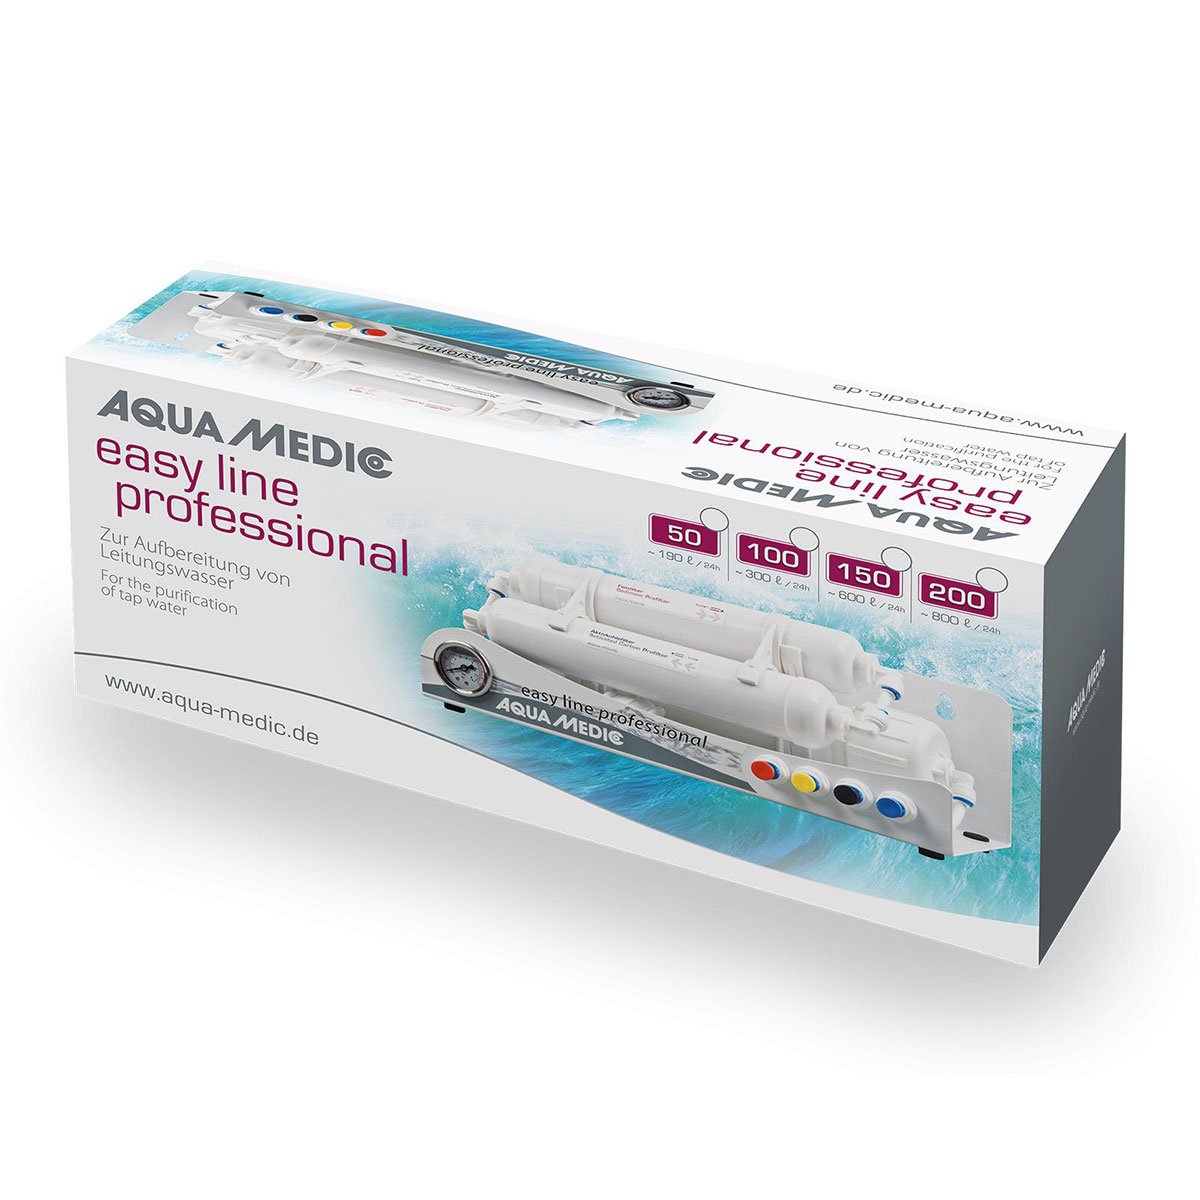 Aqua Medic Osmoseanlage easy line professional 150GPD